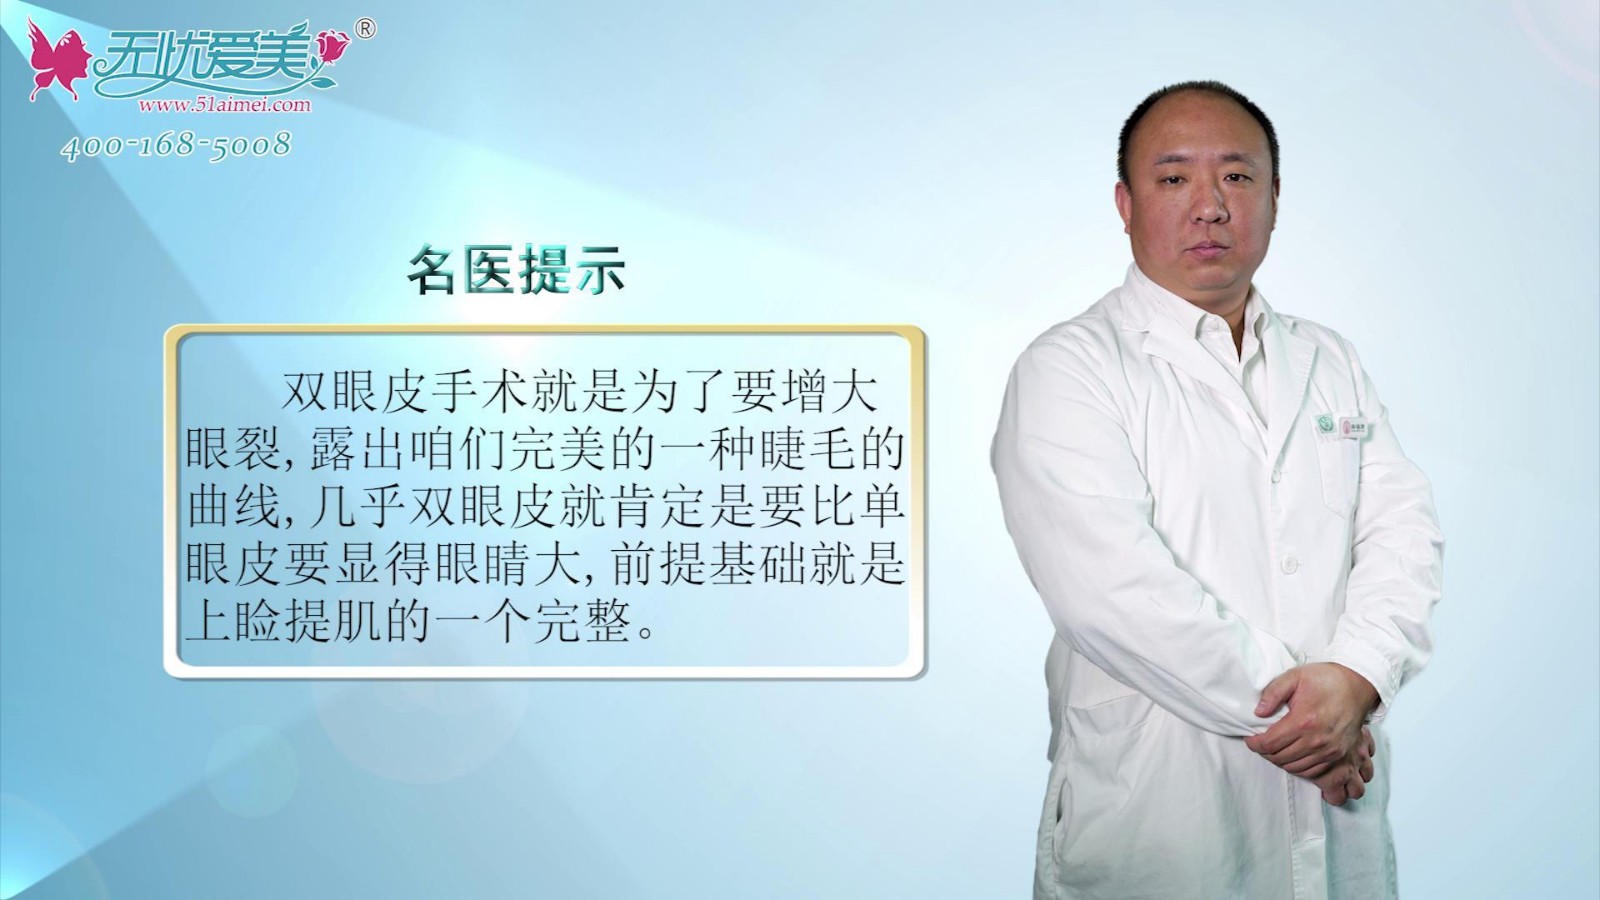 北京海医悦美马涛视频讲解双眼皮的作用及上睑下垂矫正